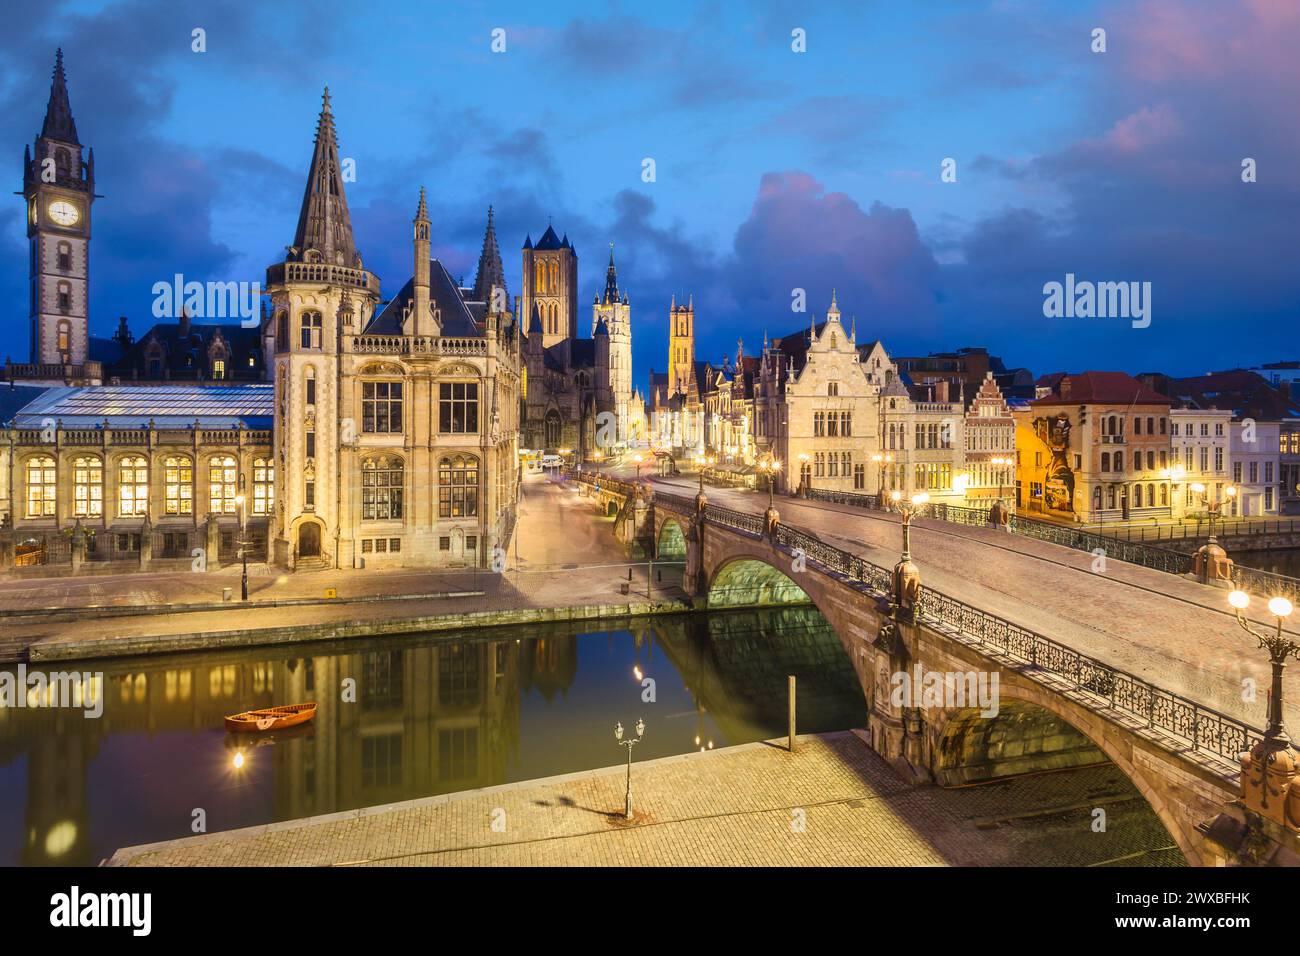 Point de vue élevé de la ville médiévale de Gand en Flandre avec l'église Saint-Nicolas et la mairie de Gand, Belgique. Banque D'Images